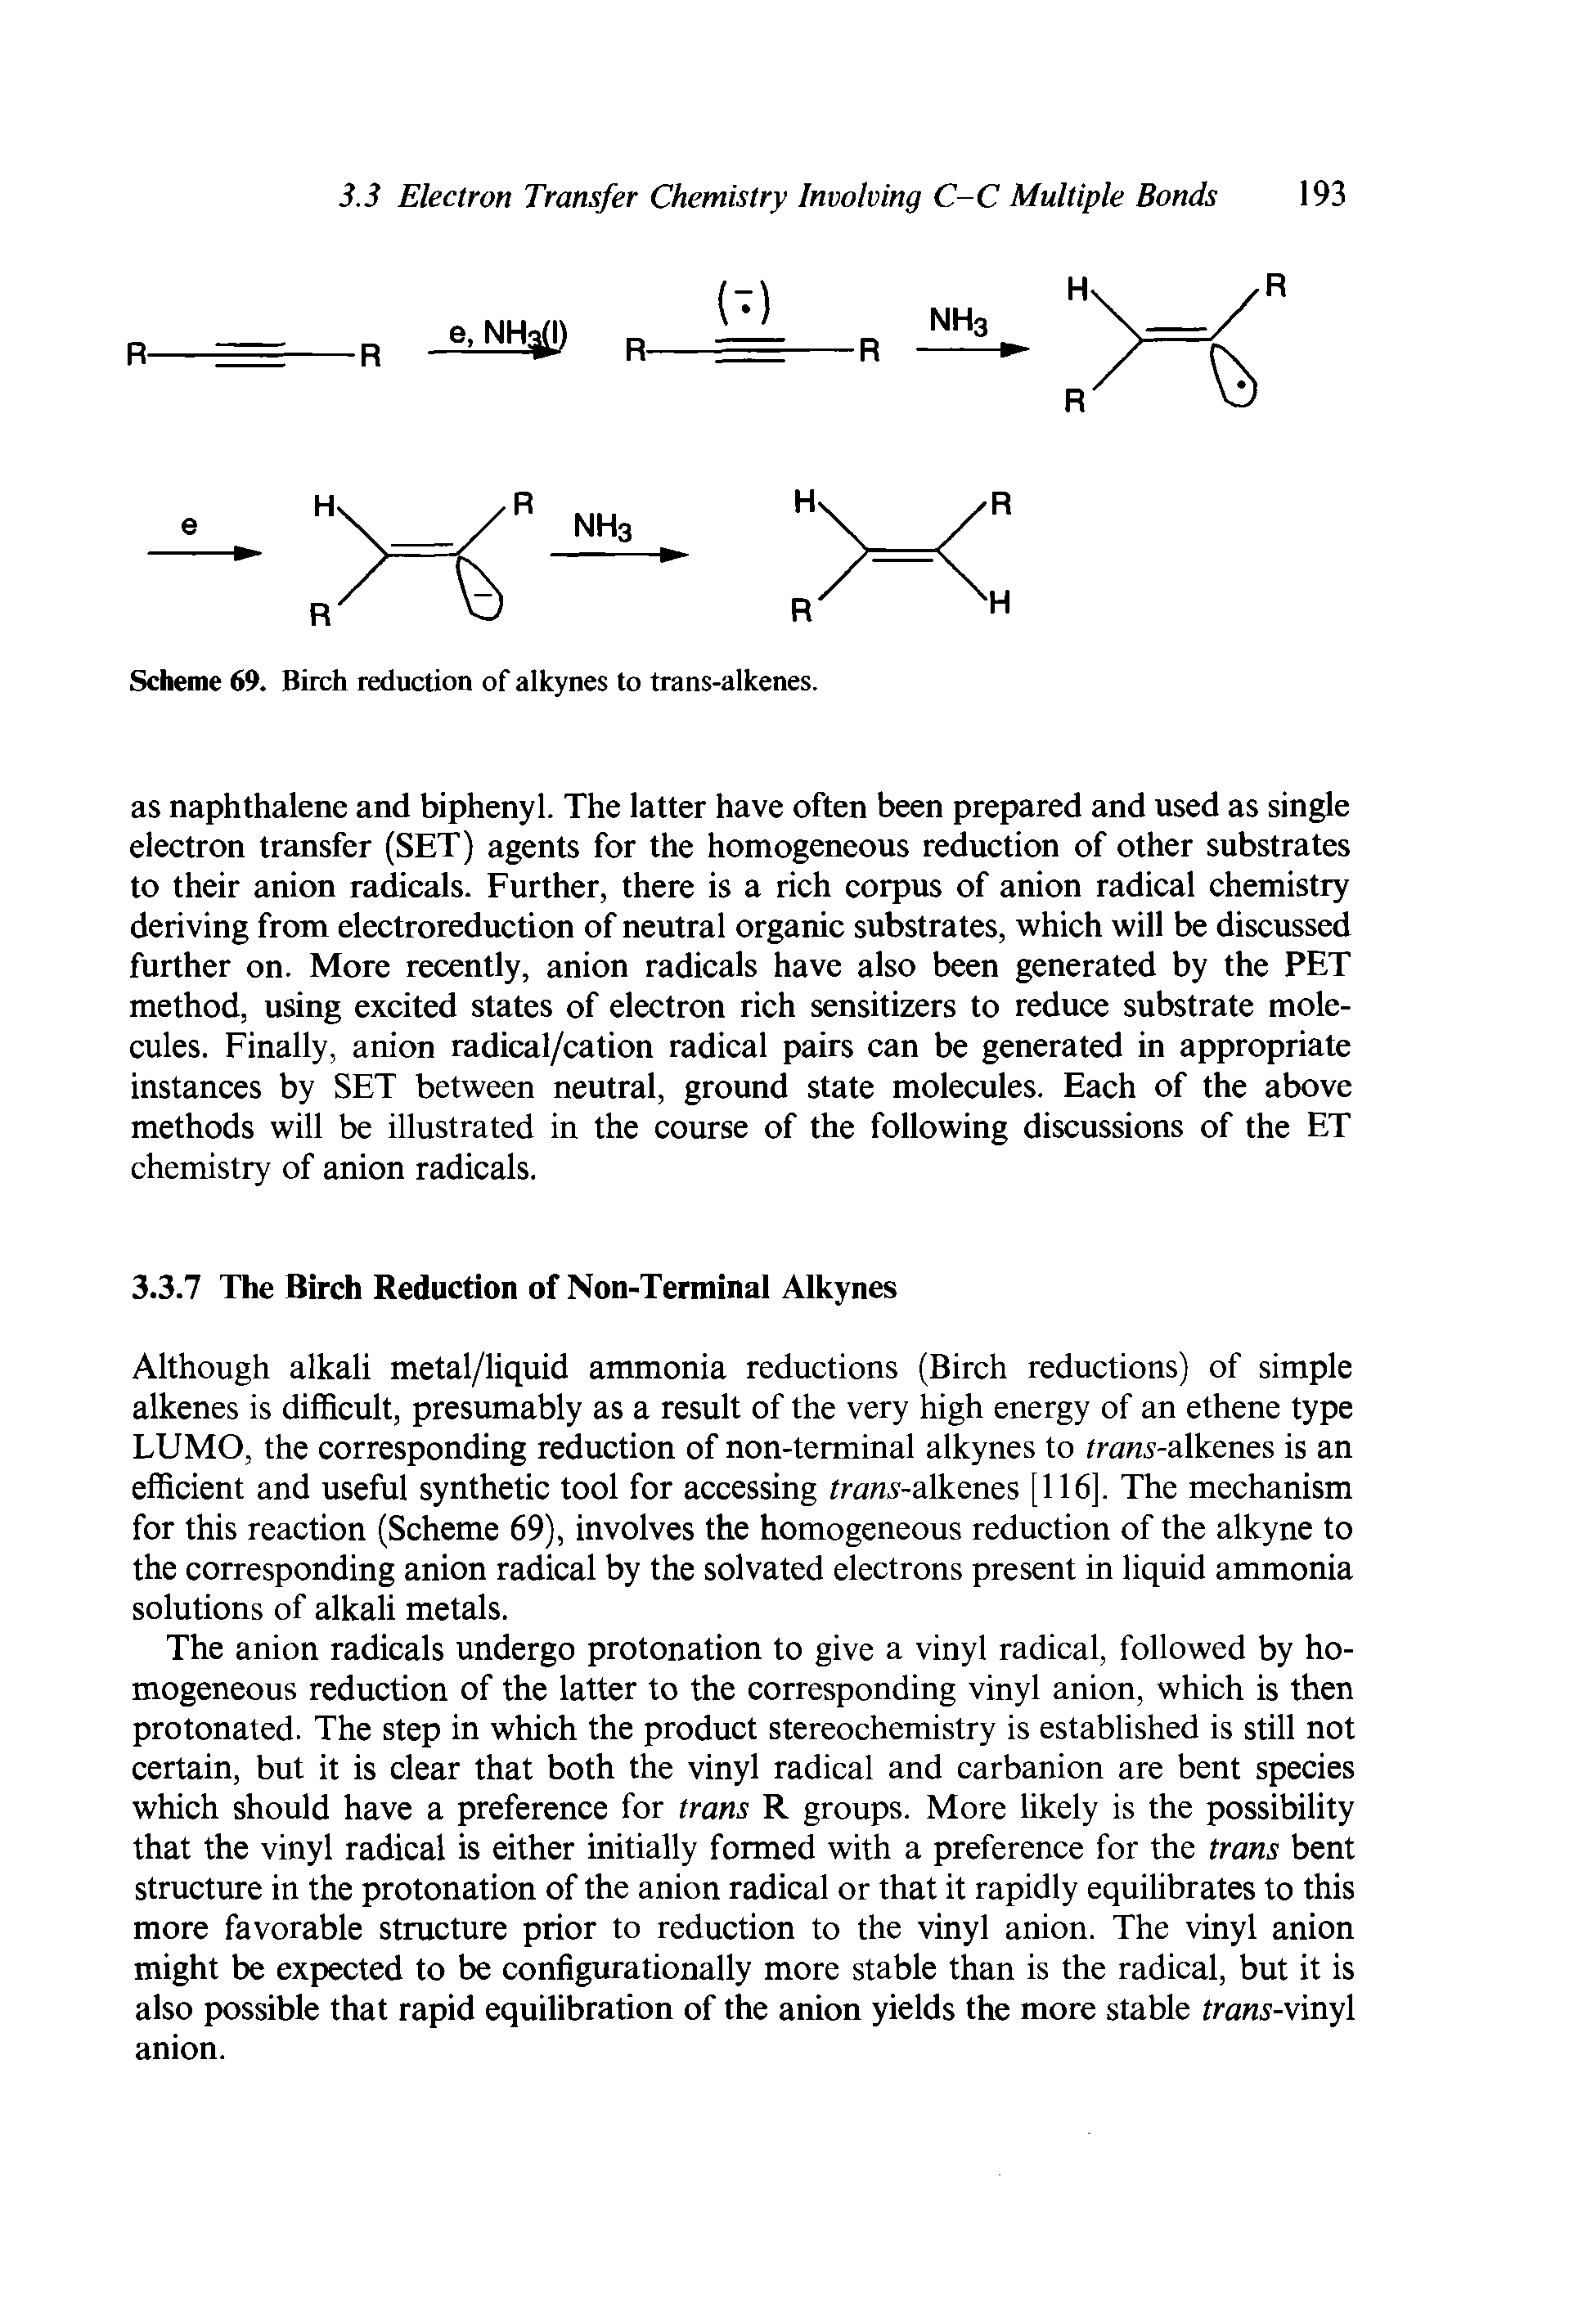 Scheme 69. Birch reduction of alkynes to trans-alkenes.